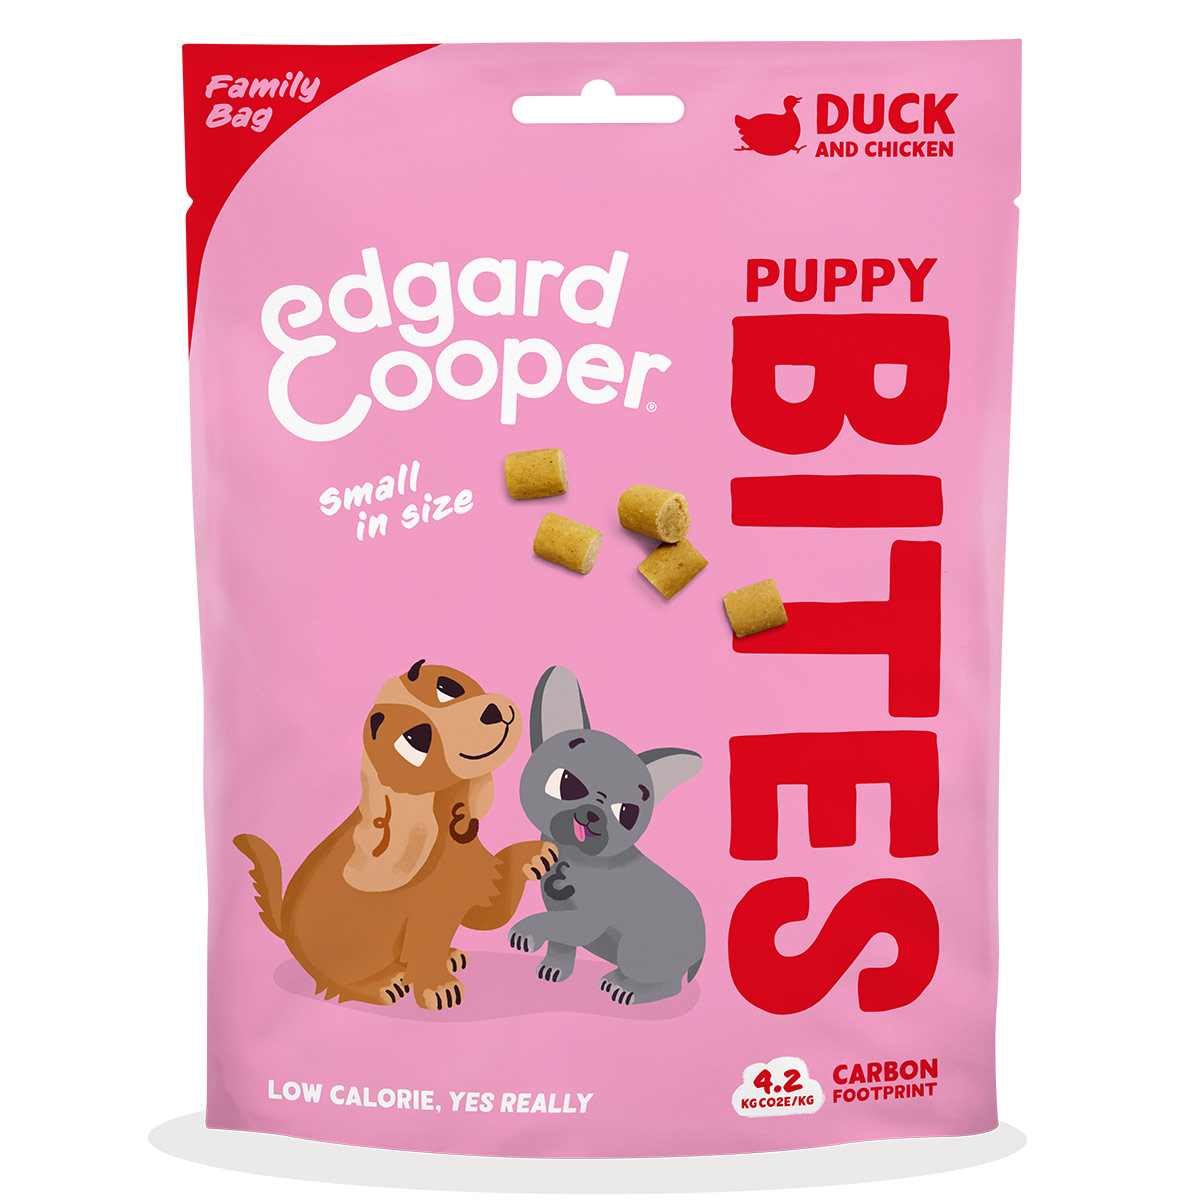 Erdgard&amp;Cooper Bites Ente u. Huhn Family Pack 120g